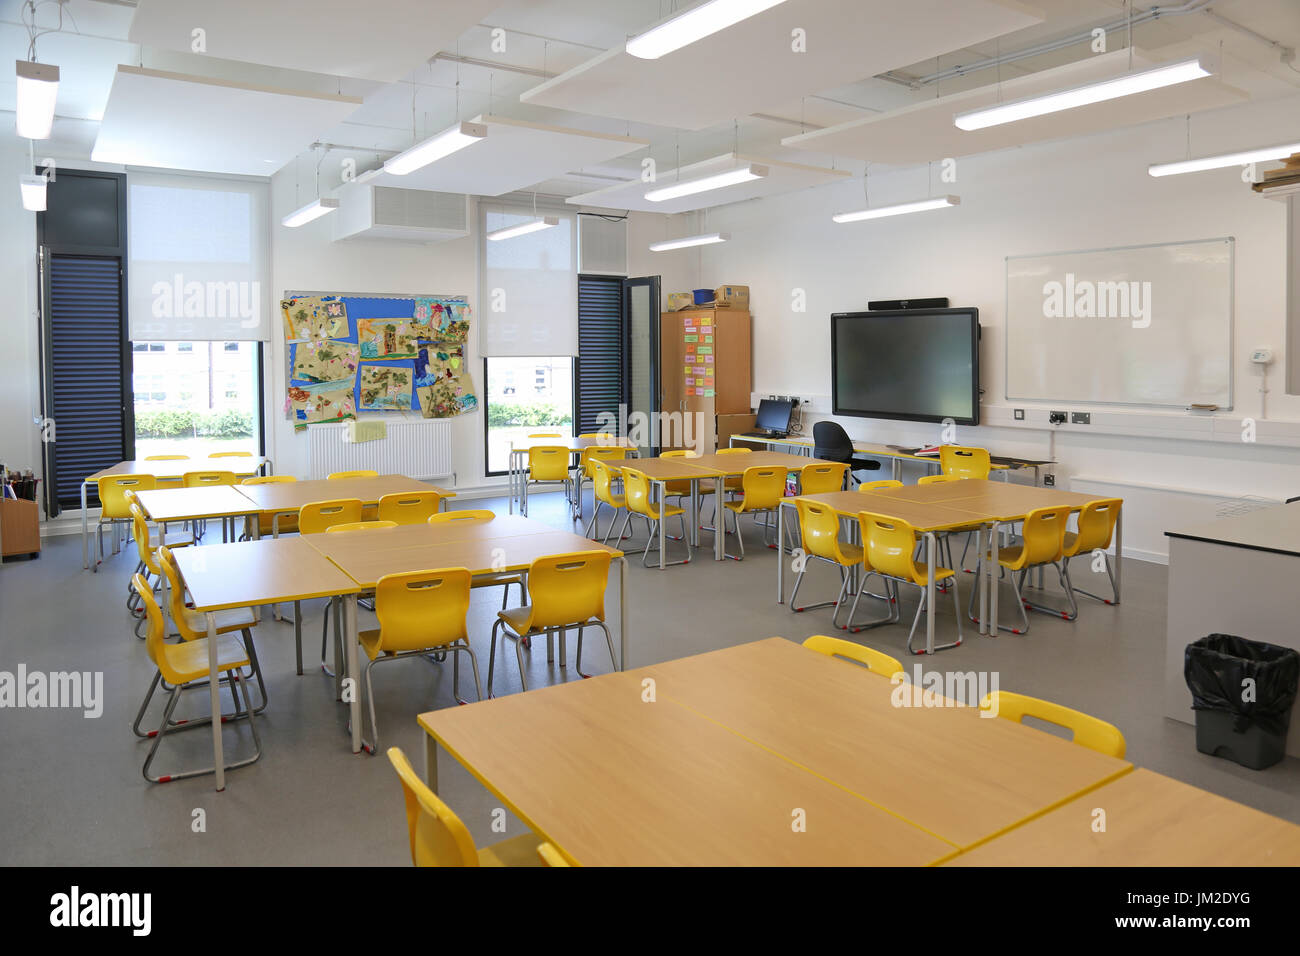 Interno di una classe in una scuola primaria di recente costruzione nella parte orientale di Londra, Regno Unito. Mostra scrivanie, sedie e grande schermo TV.vuoto, non alunni. Foto Stock